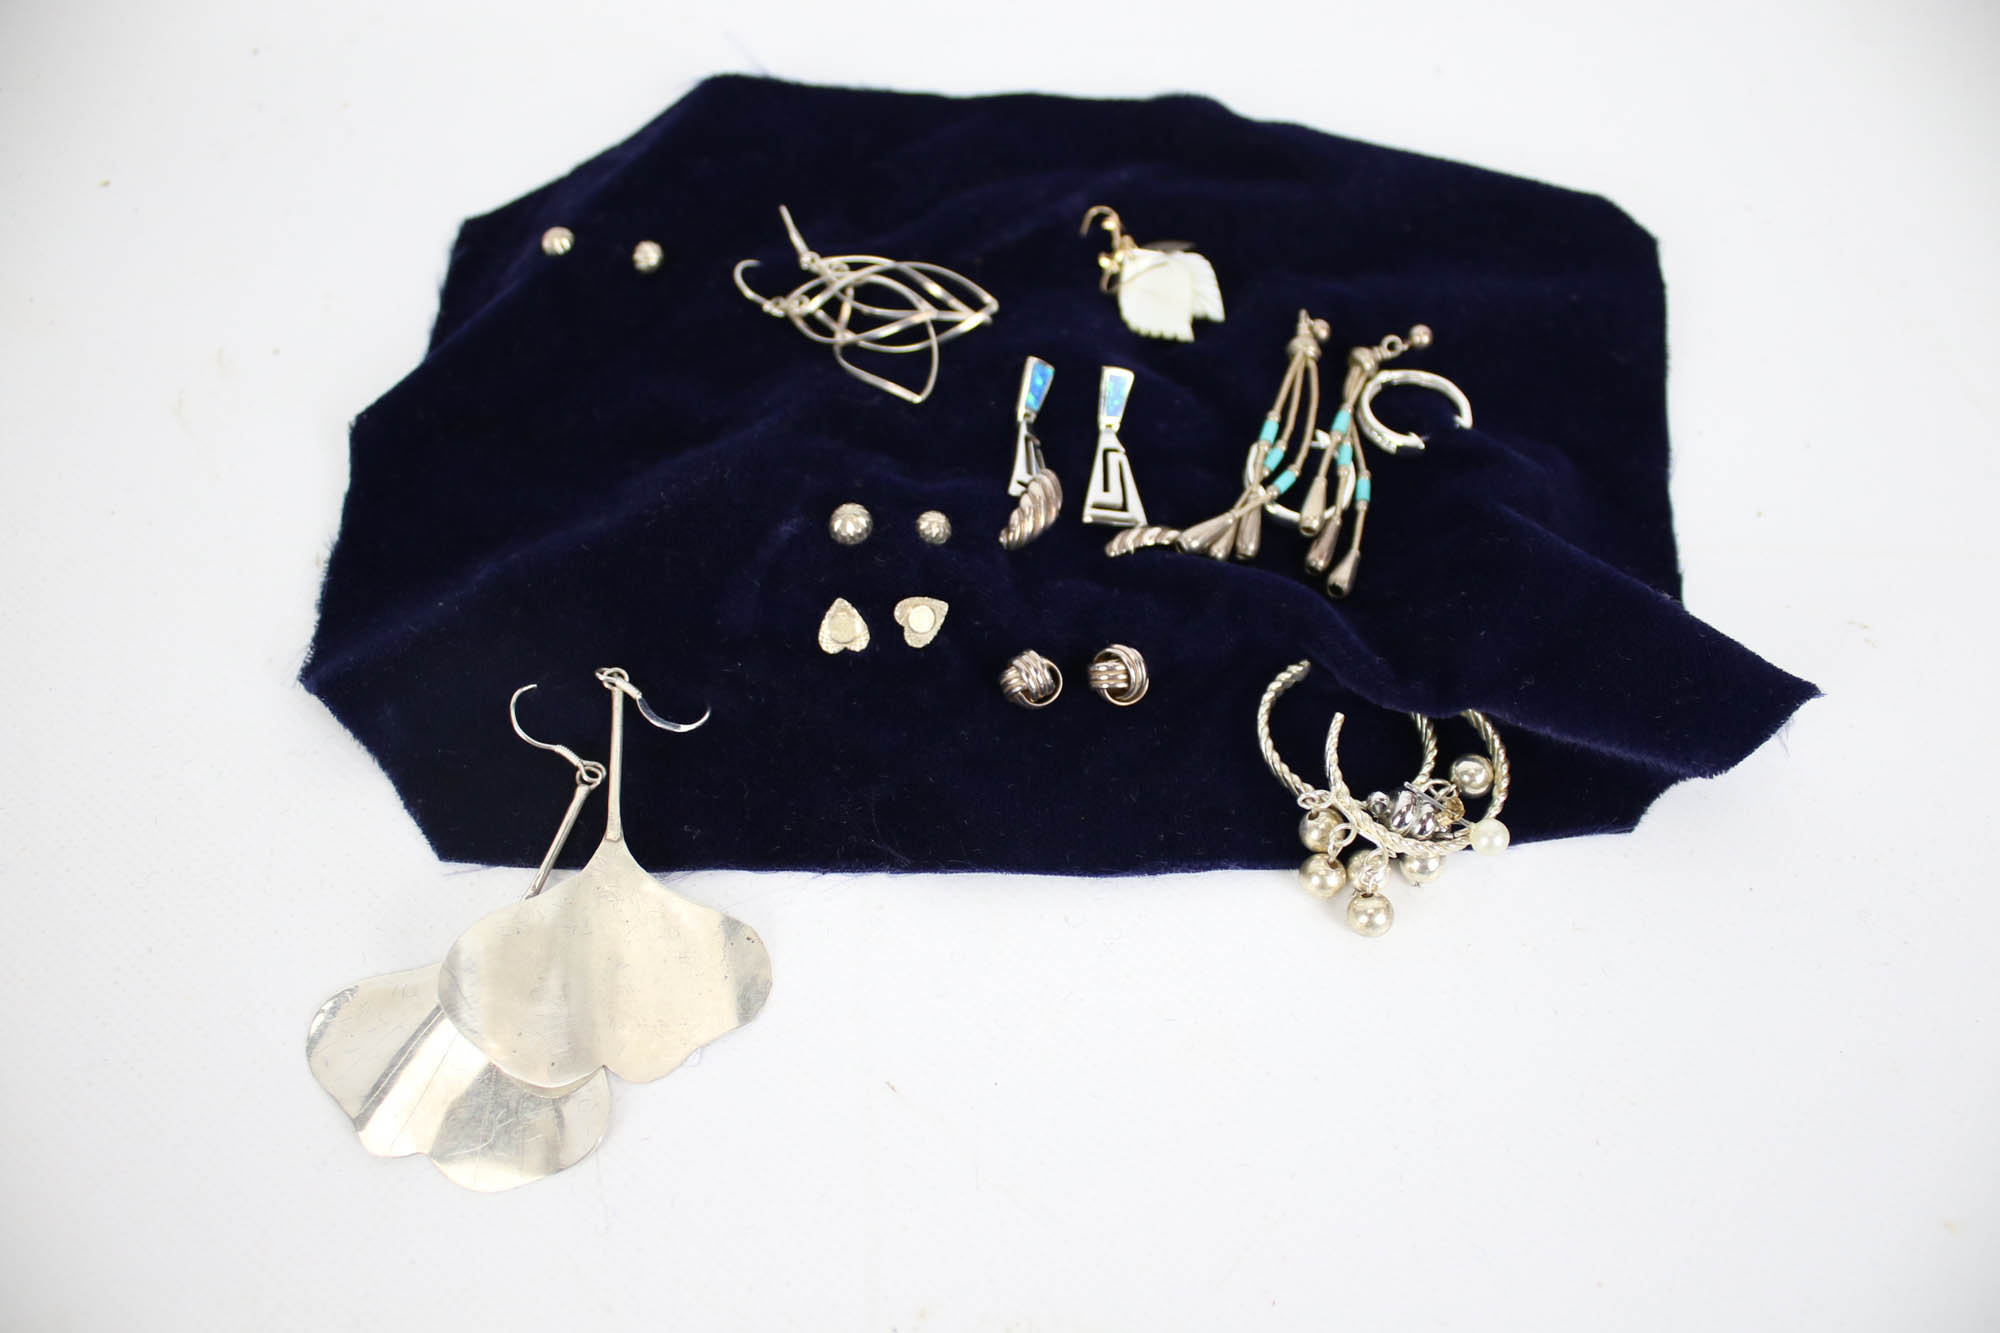 Twelve pairs of silver earrings in various designs